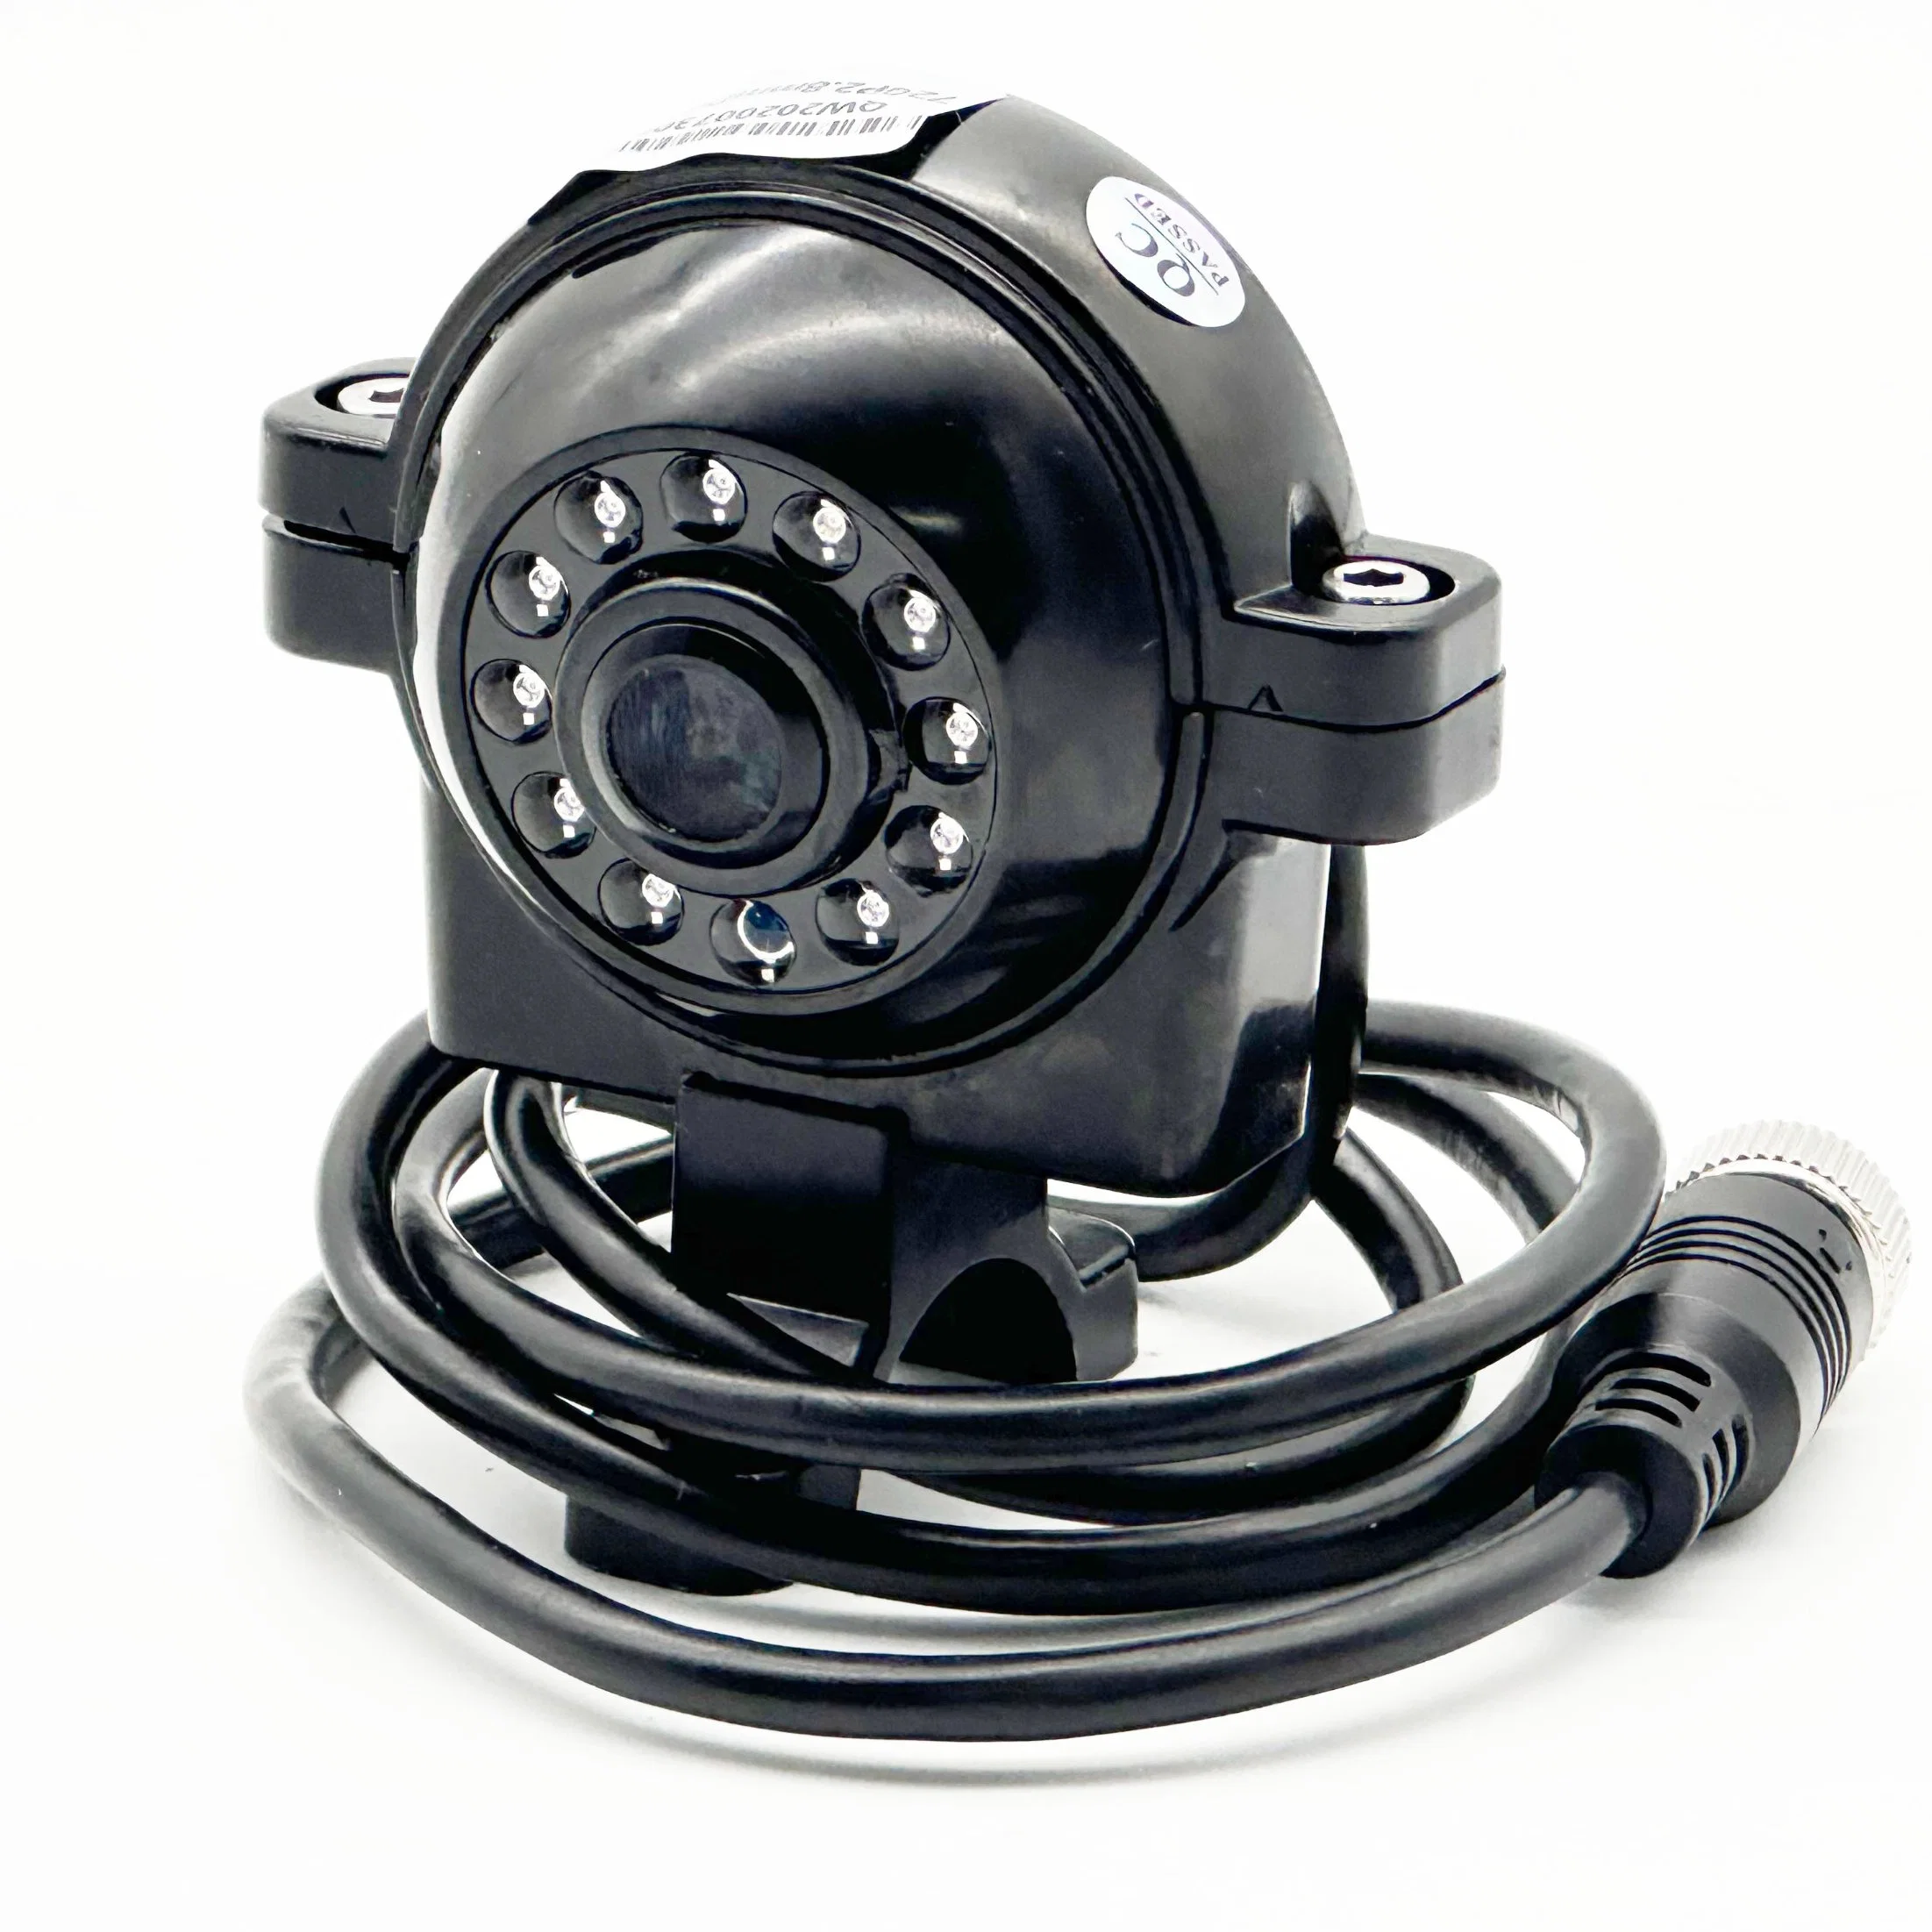 نظام مراقبة الفيديو للسيارة CTV Camera من نوع FL-720p/1080p للرؤية الخارجية